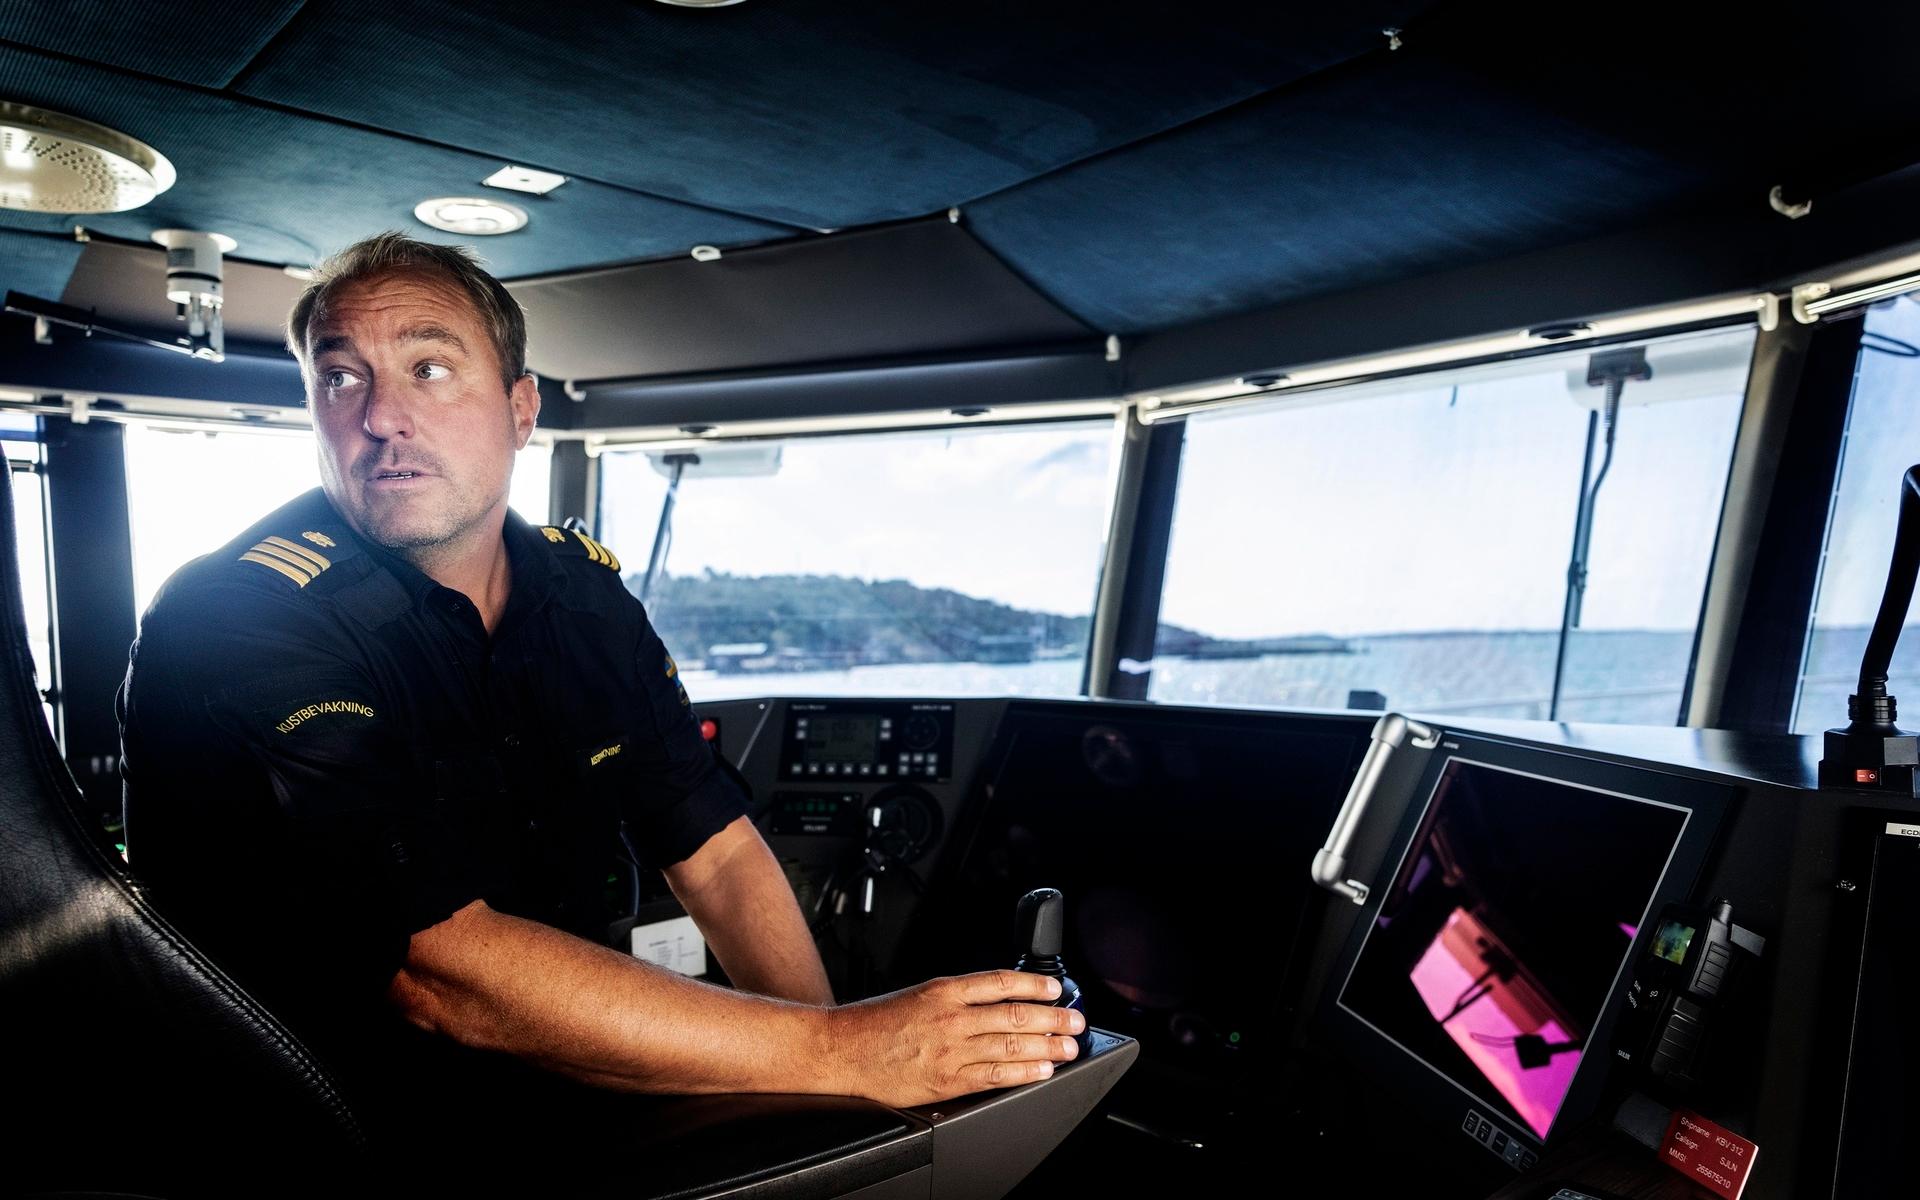 På sommaren fokuserar kapten Henrik Larsson och hans kollegor mycket på sjötrafiken. ”Det är sjöfyllor, fartöverträdelser och sjöräddningar”.